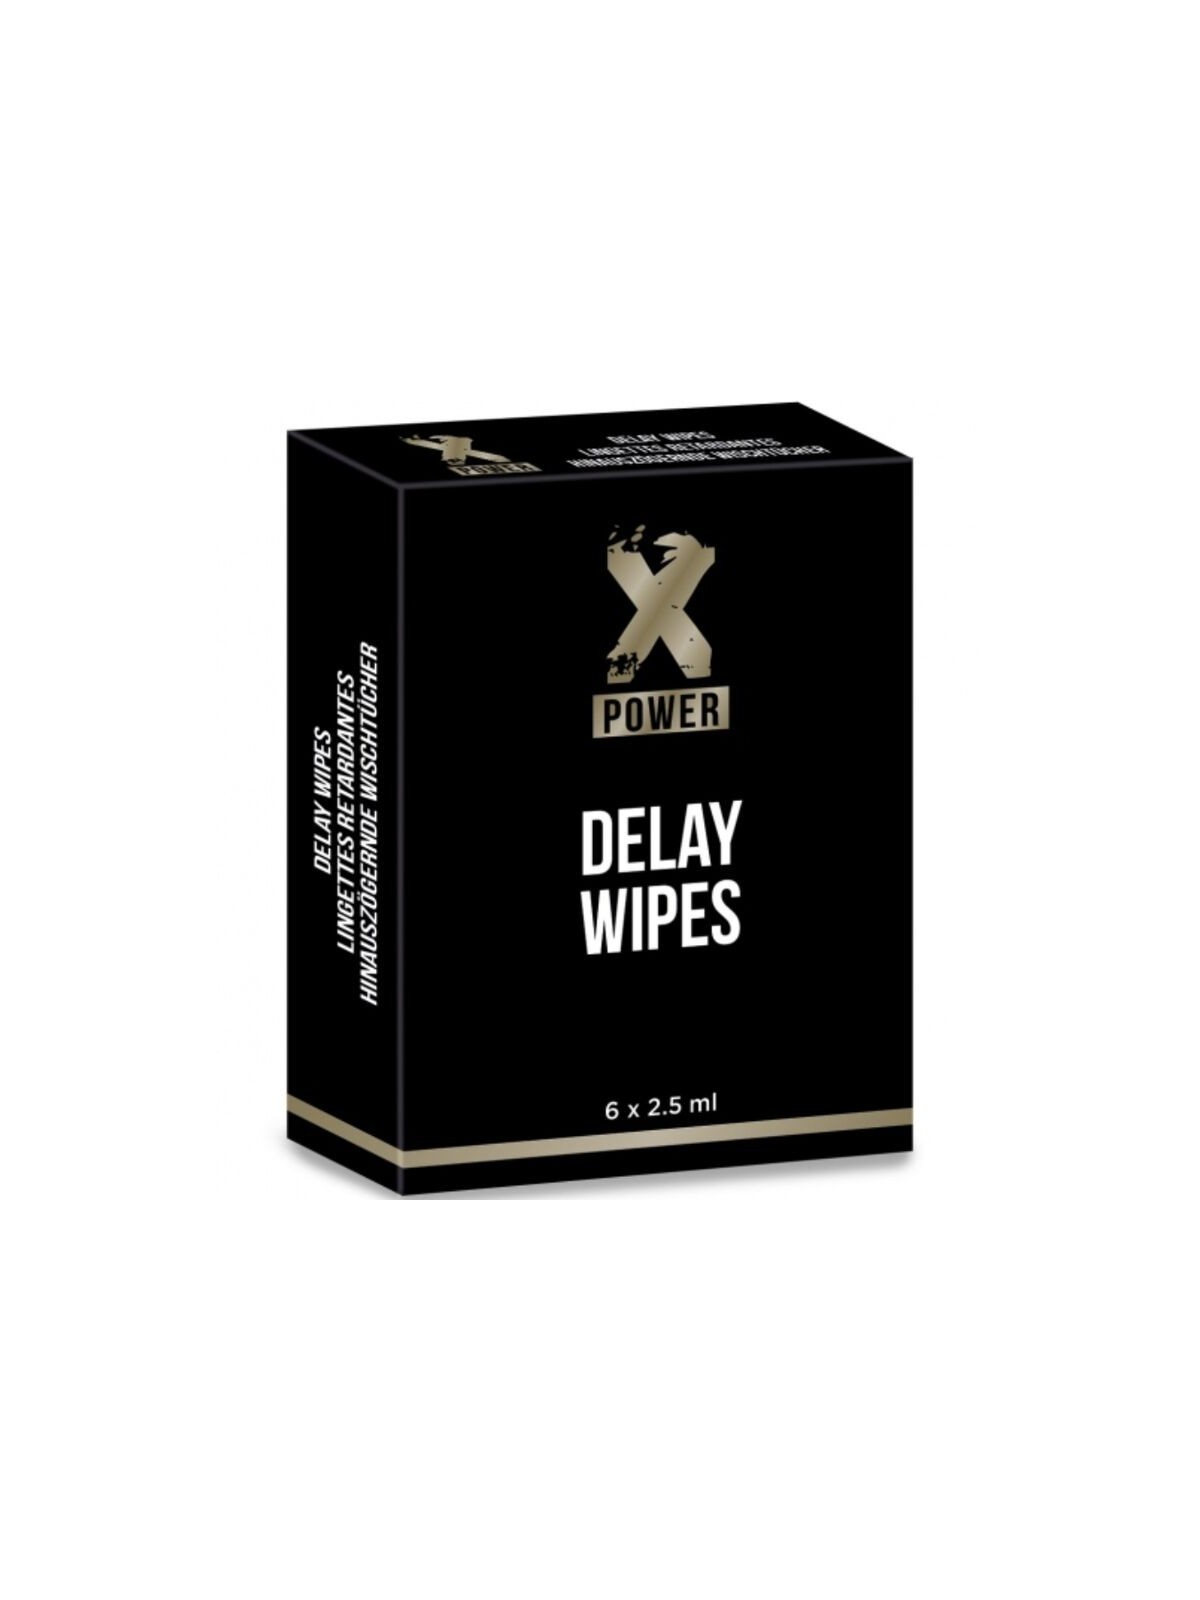 Xpower Delay Wipes Toallitas Retardantes 6 uds - Comprar Retardante Xpower - Retardantes (1)